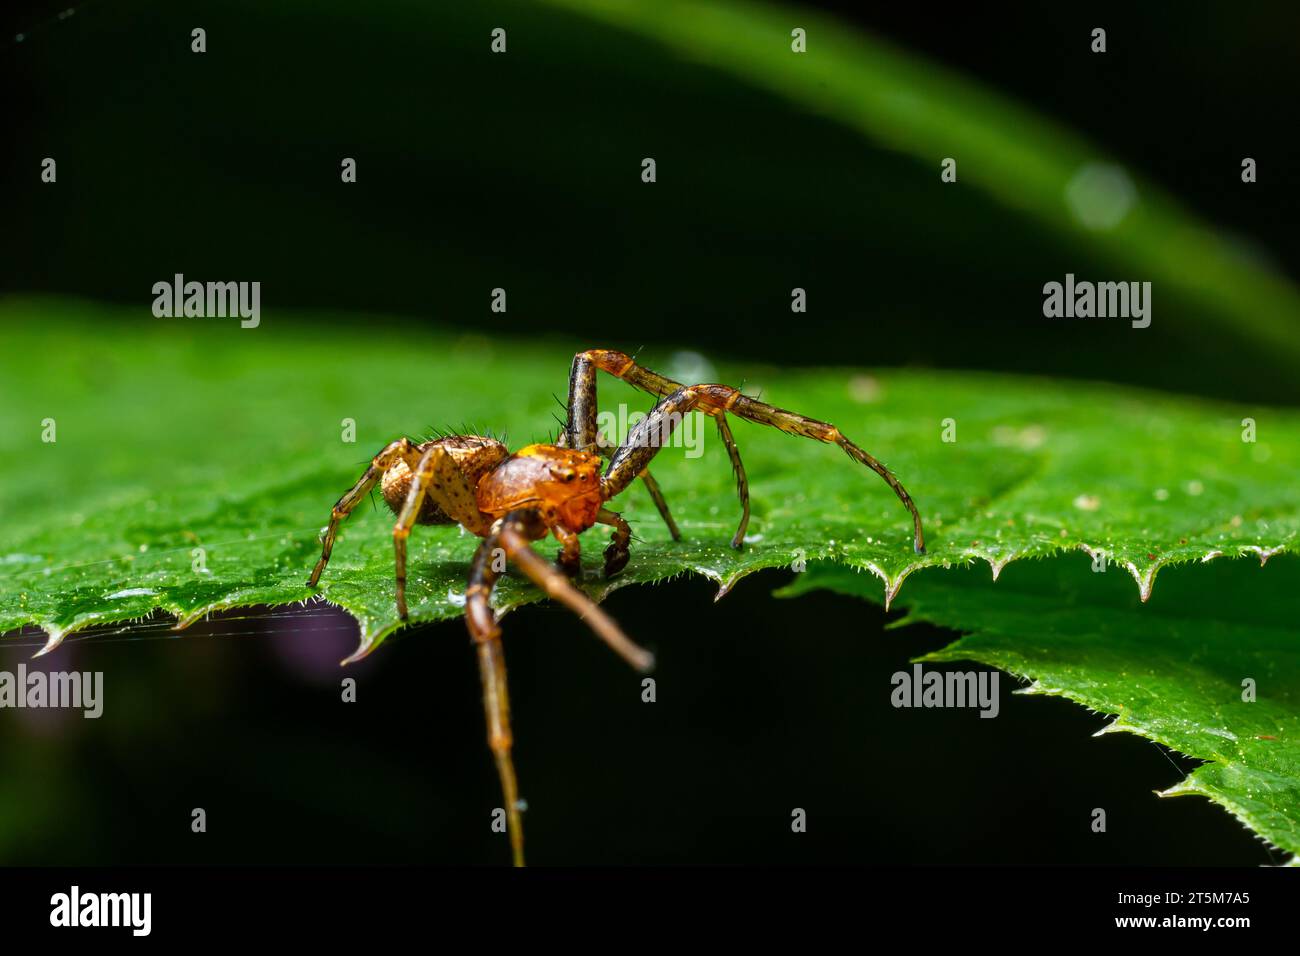 Die Xysticus-Spinne ist auf einem grünen Blatt. Natürliche Umgebung, sonniger Sommertag. Stockfoto